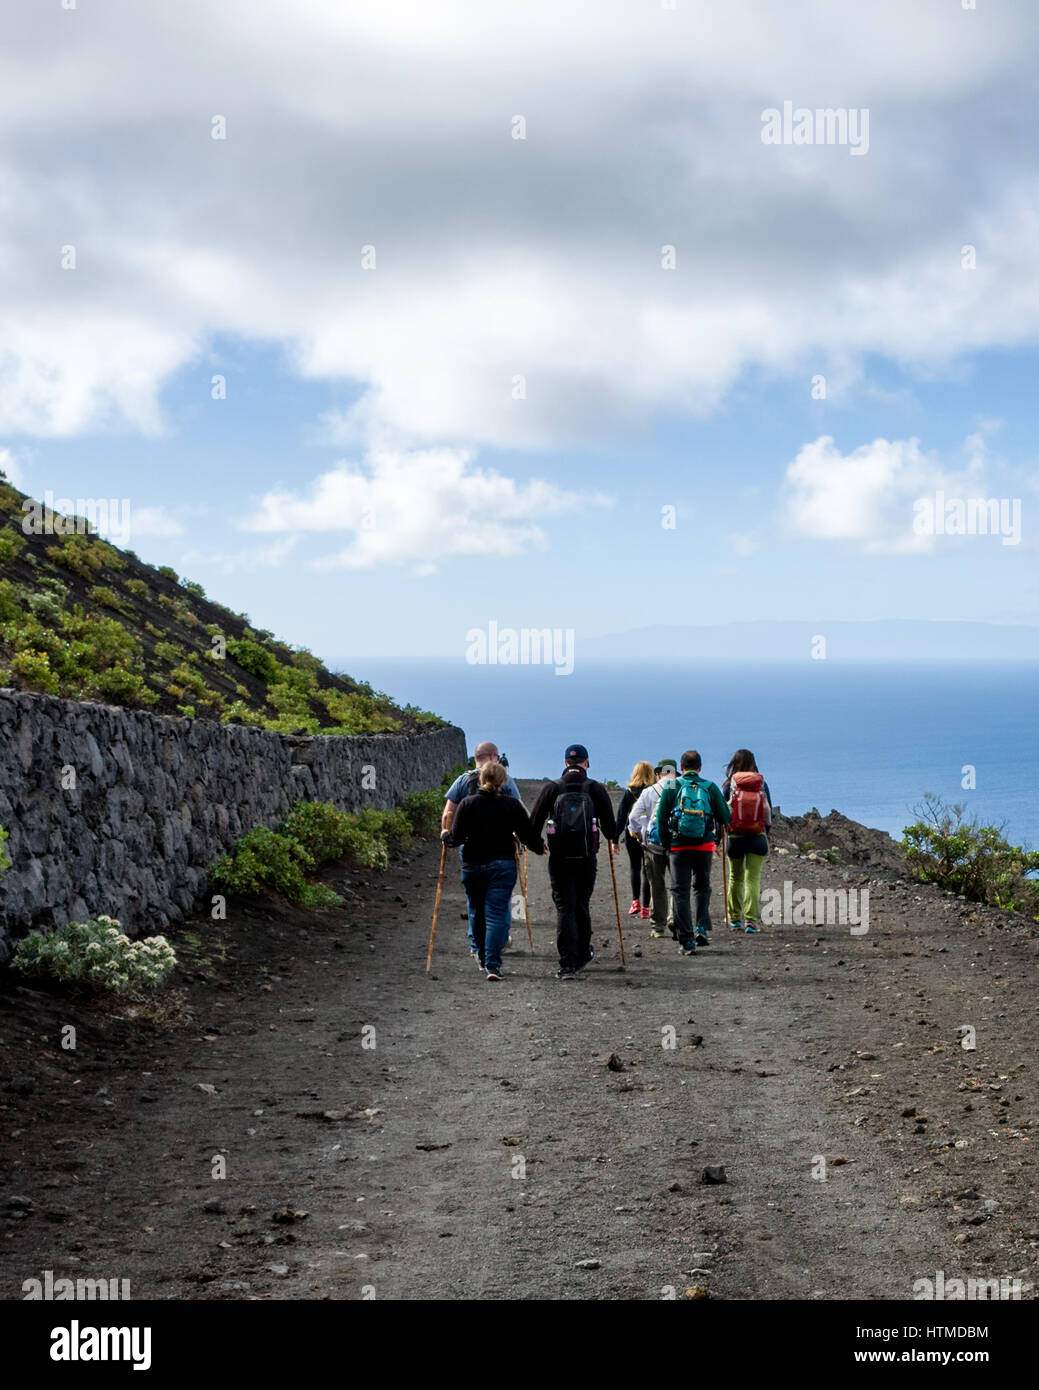 Sentiero escursionistico, Fuencaliente. La Palma. Tourist gli escursionisti a piedi lungo una strada di origine vulcanica sulla loro escursione guidata nella regione di Fuencaliente de la Palma. La vicina isola di Gomera è visibile all'orizzonte che guarda al mare. Foto Stock